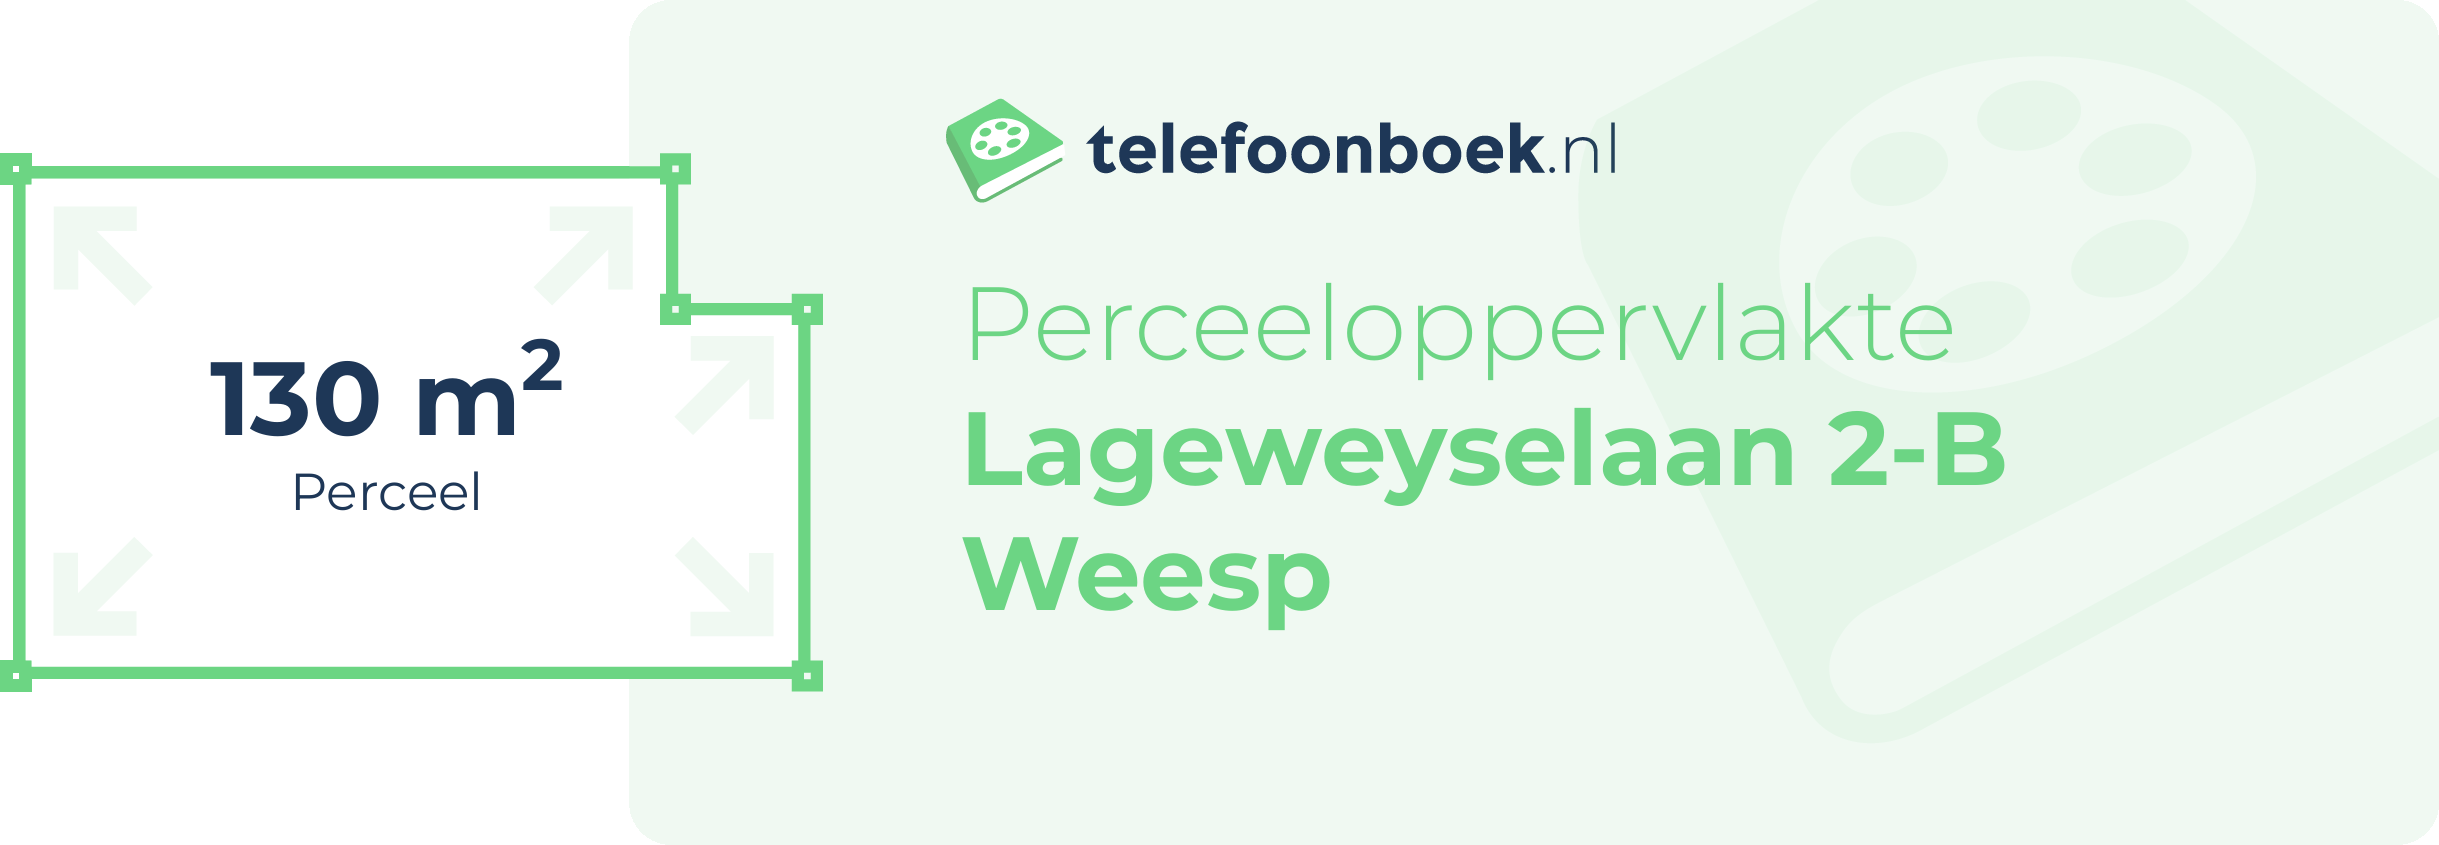 Perceeloppervlakte Lageweyselaan 2-B Weesp